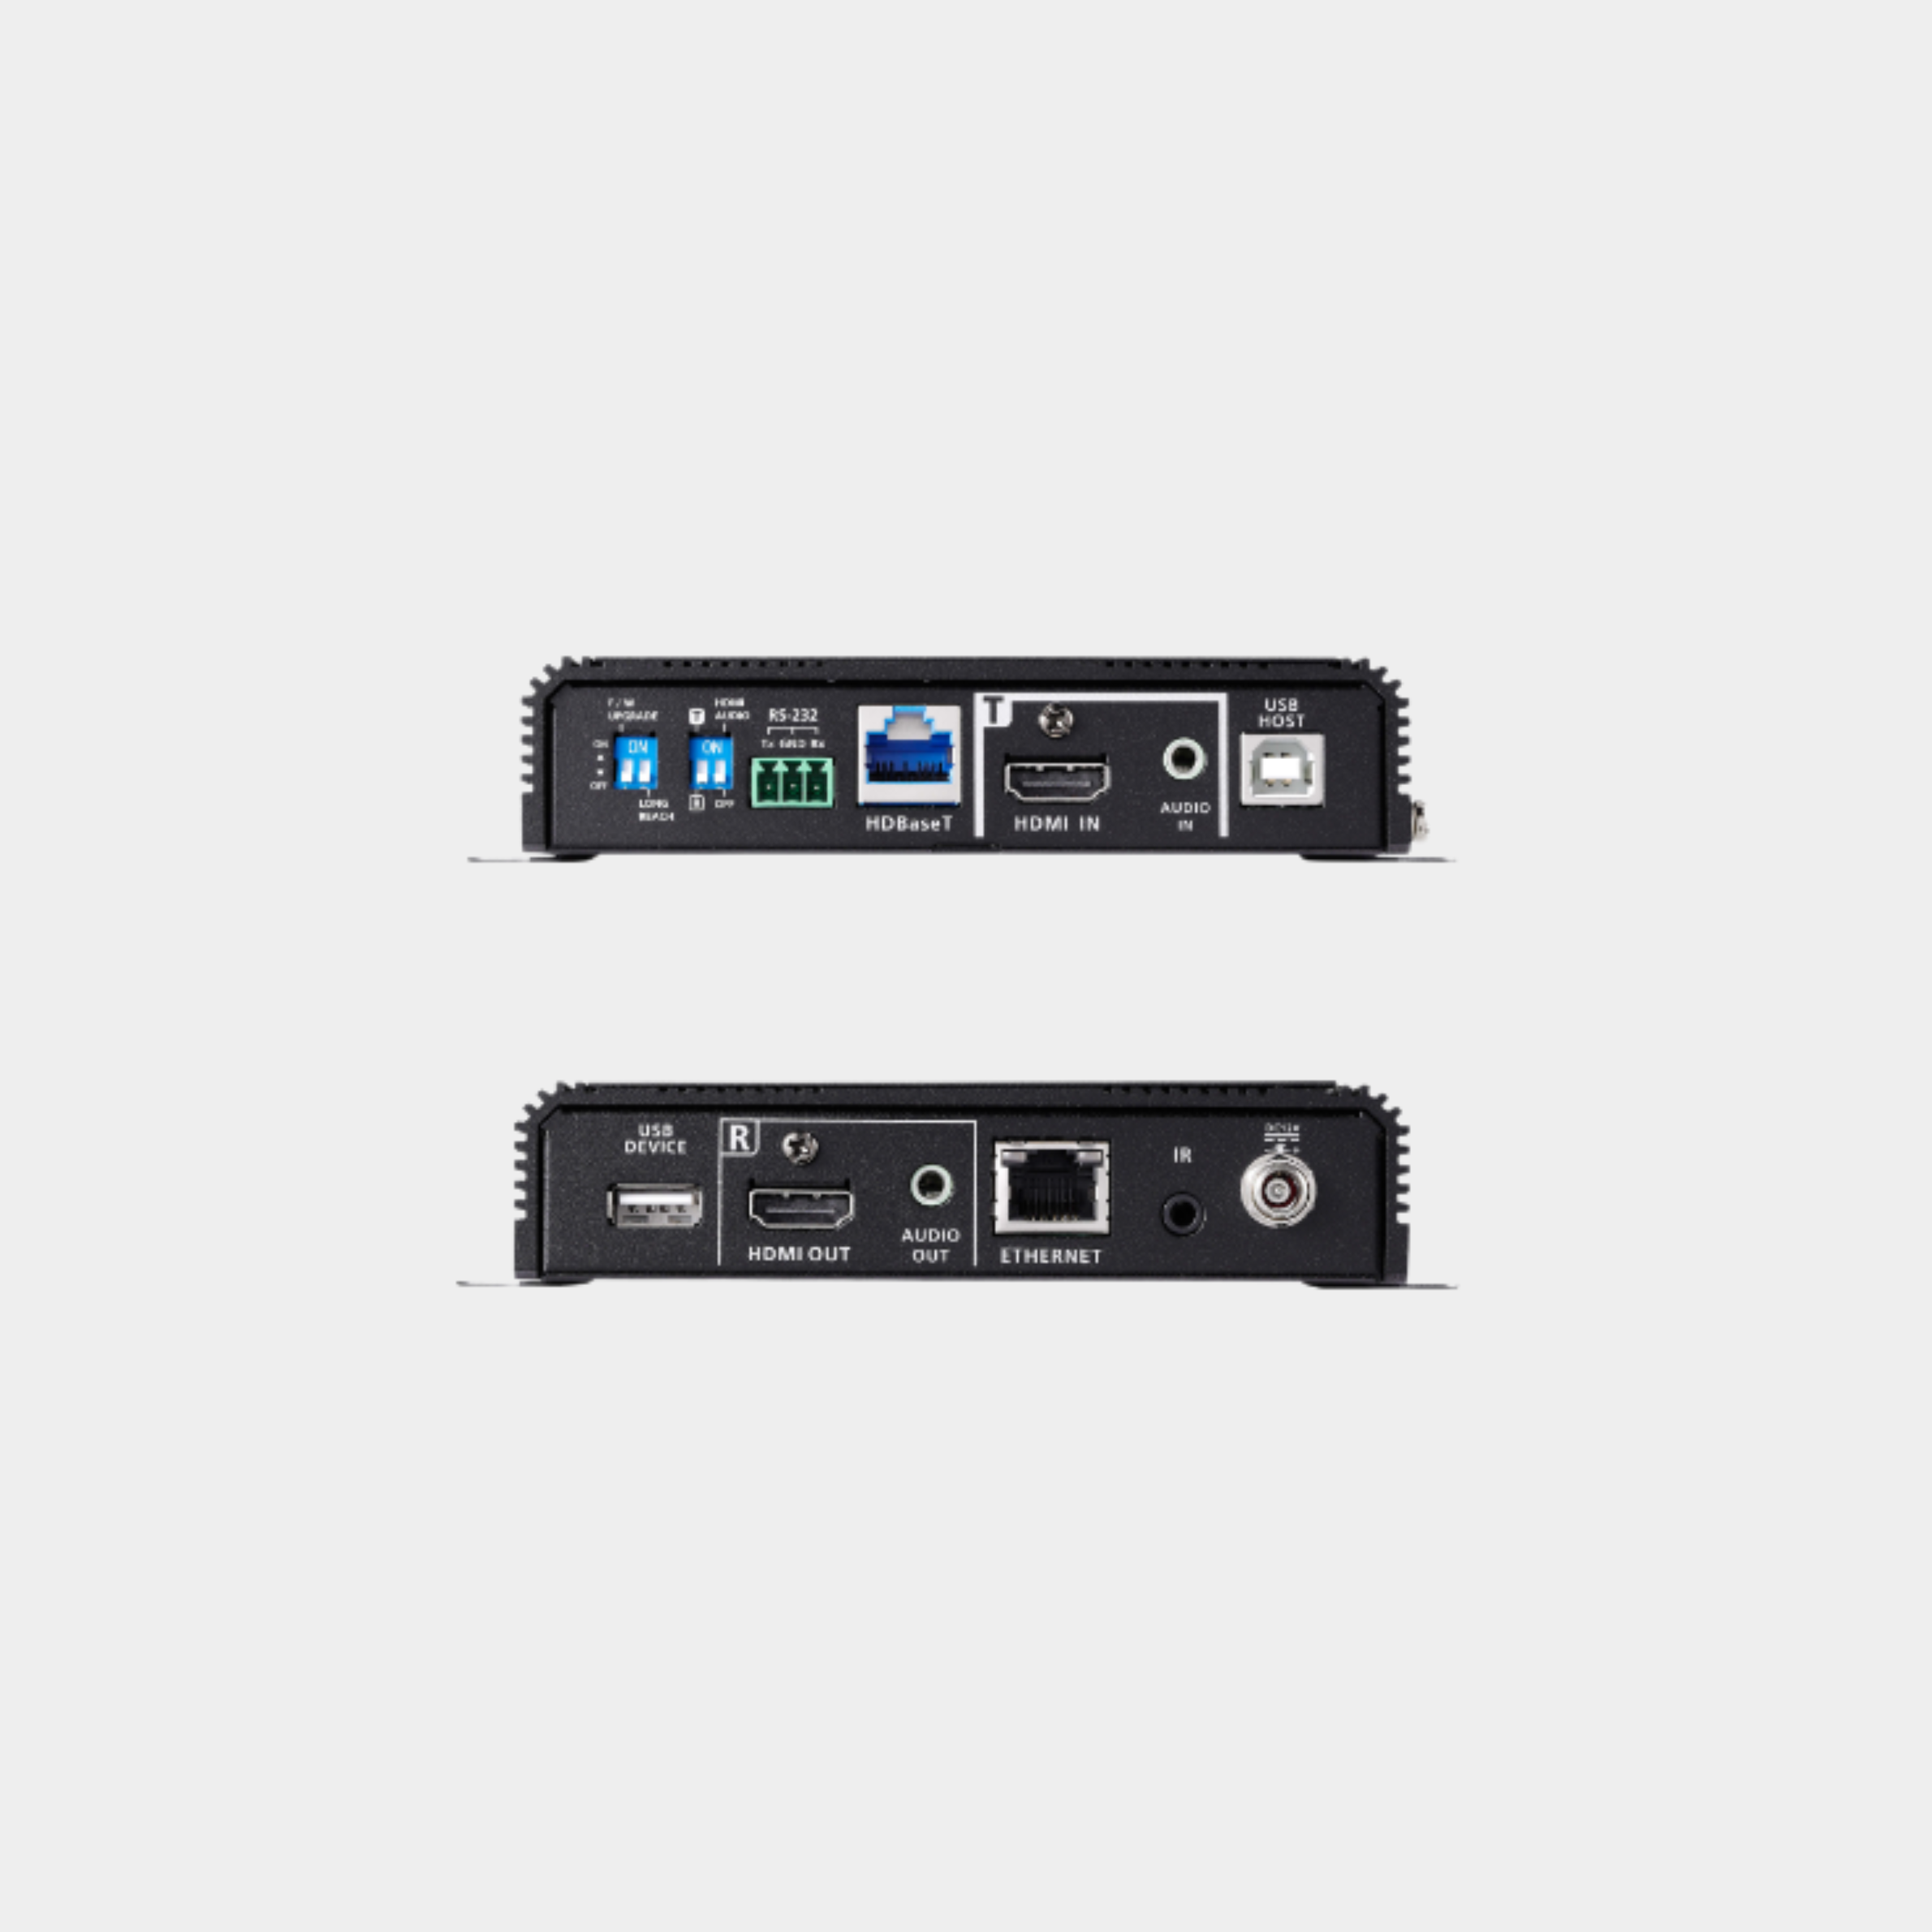 Aten True 4K HDMI/USB HDBaseT3.0 Transceiver(ATEN VE1843)